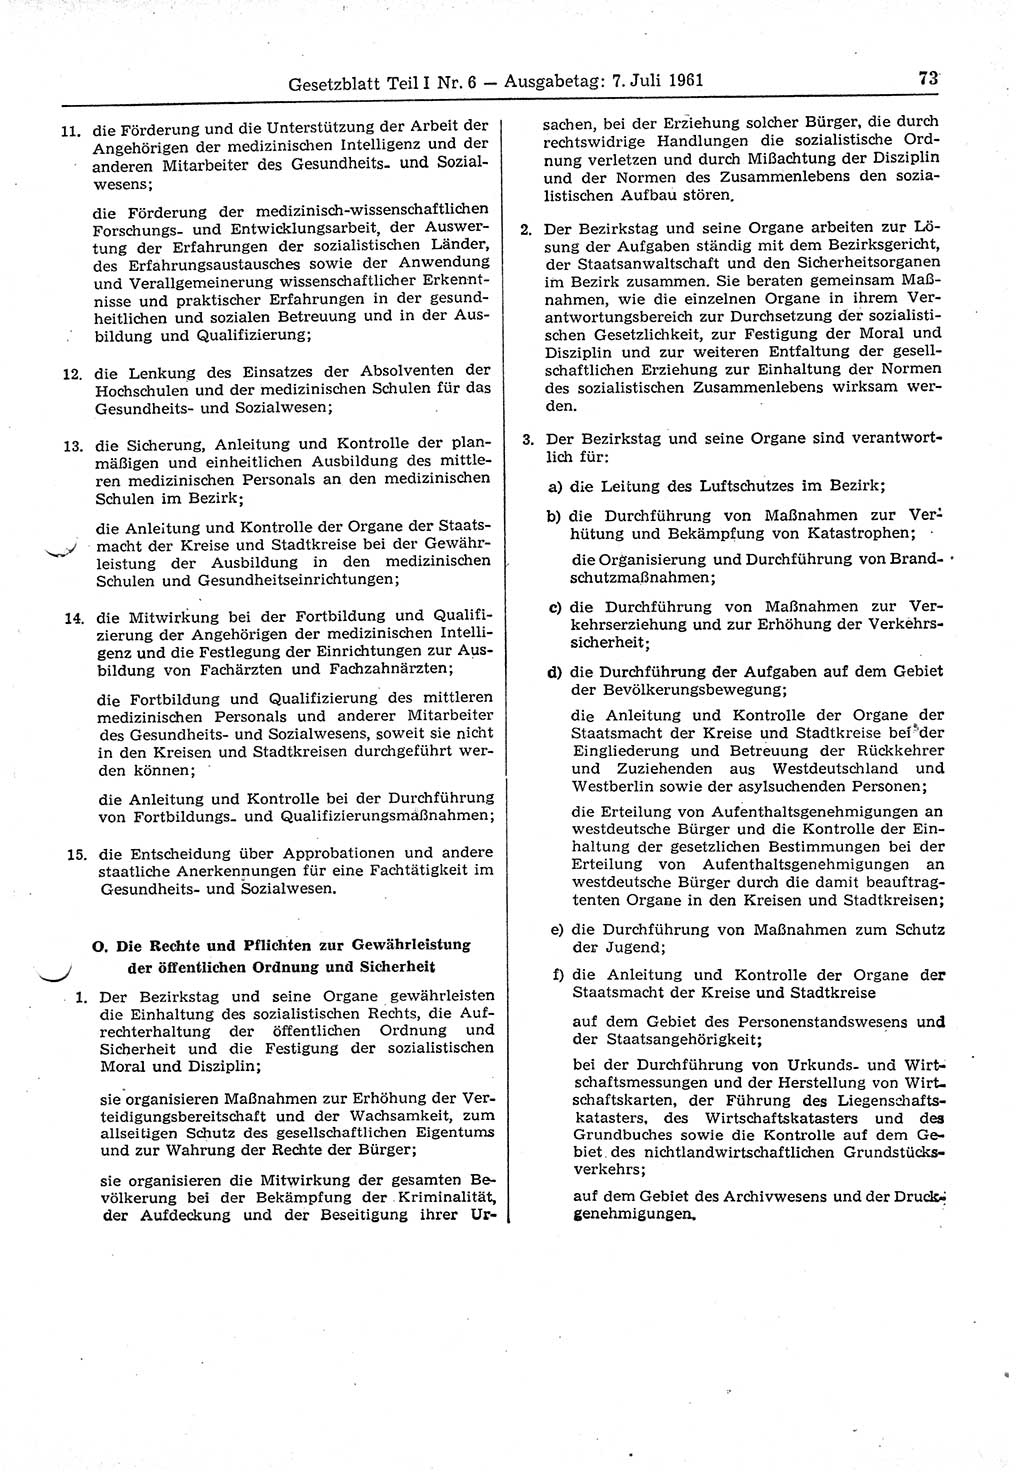 Gesetzblatt (GBl.) der Deutschen Demokratischen Republik (DDR) Teil Ⅰ 1961, Seite 73 (GBl. DDR Ⅰ 1961, S. 73)